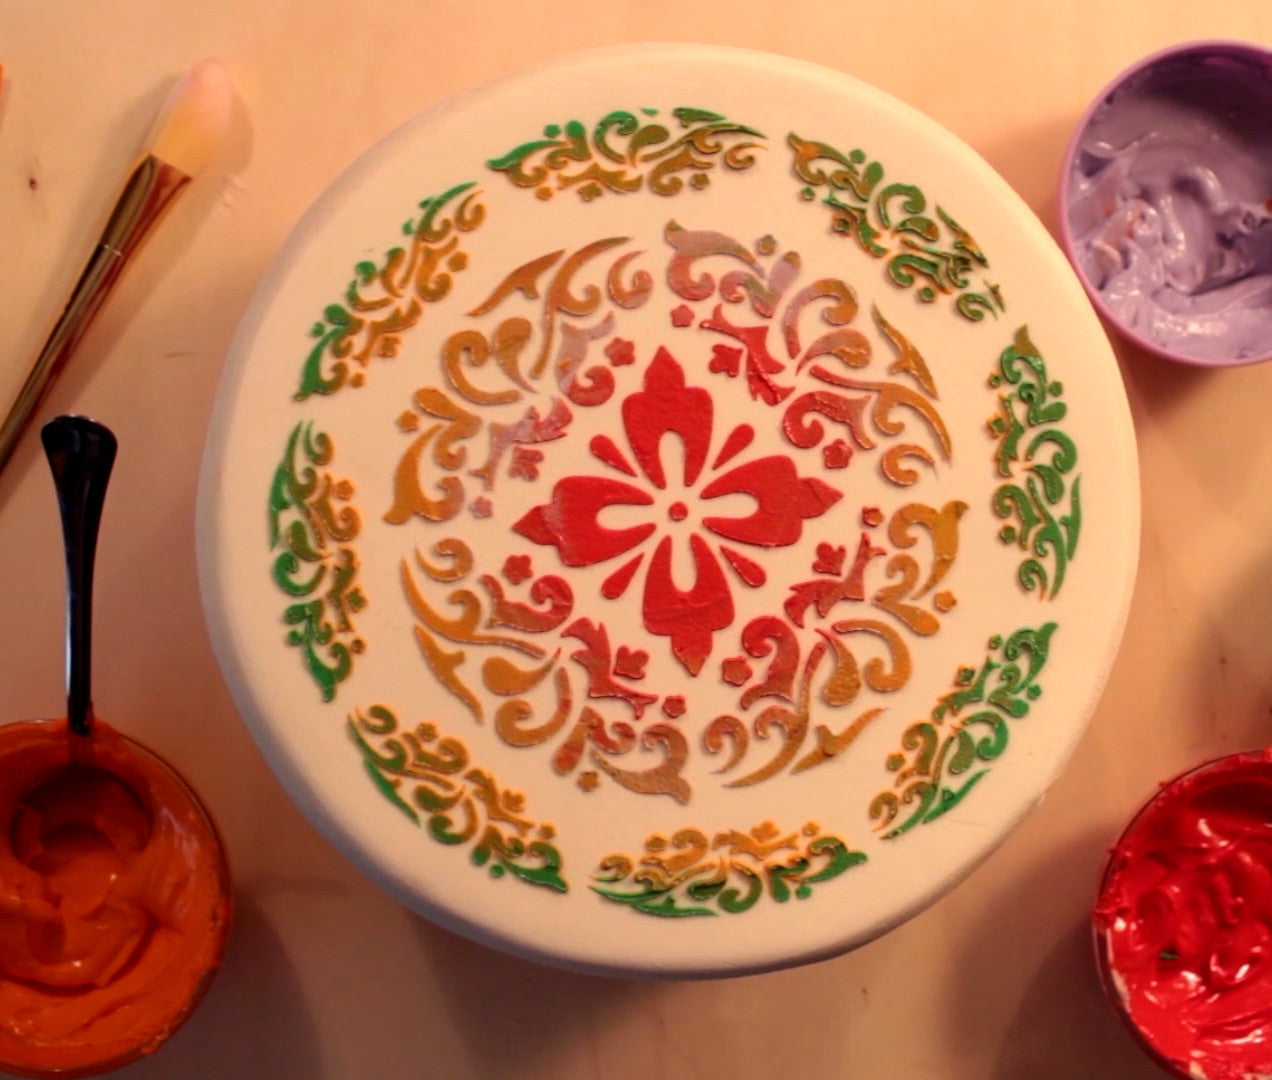 Flower Cake Stencil, Cookie Stencil, Airbrush Stencil|Blume Torten Schablonen, Airbrush und Royal Icing